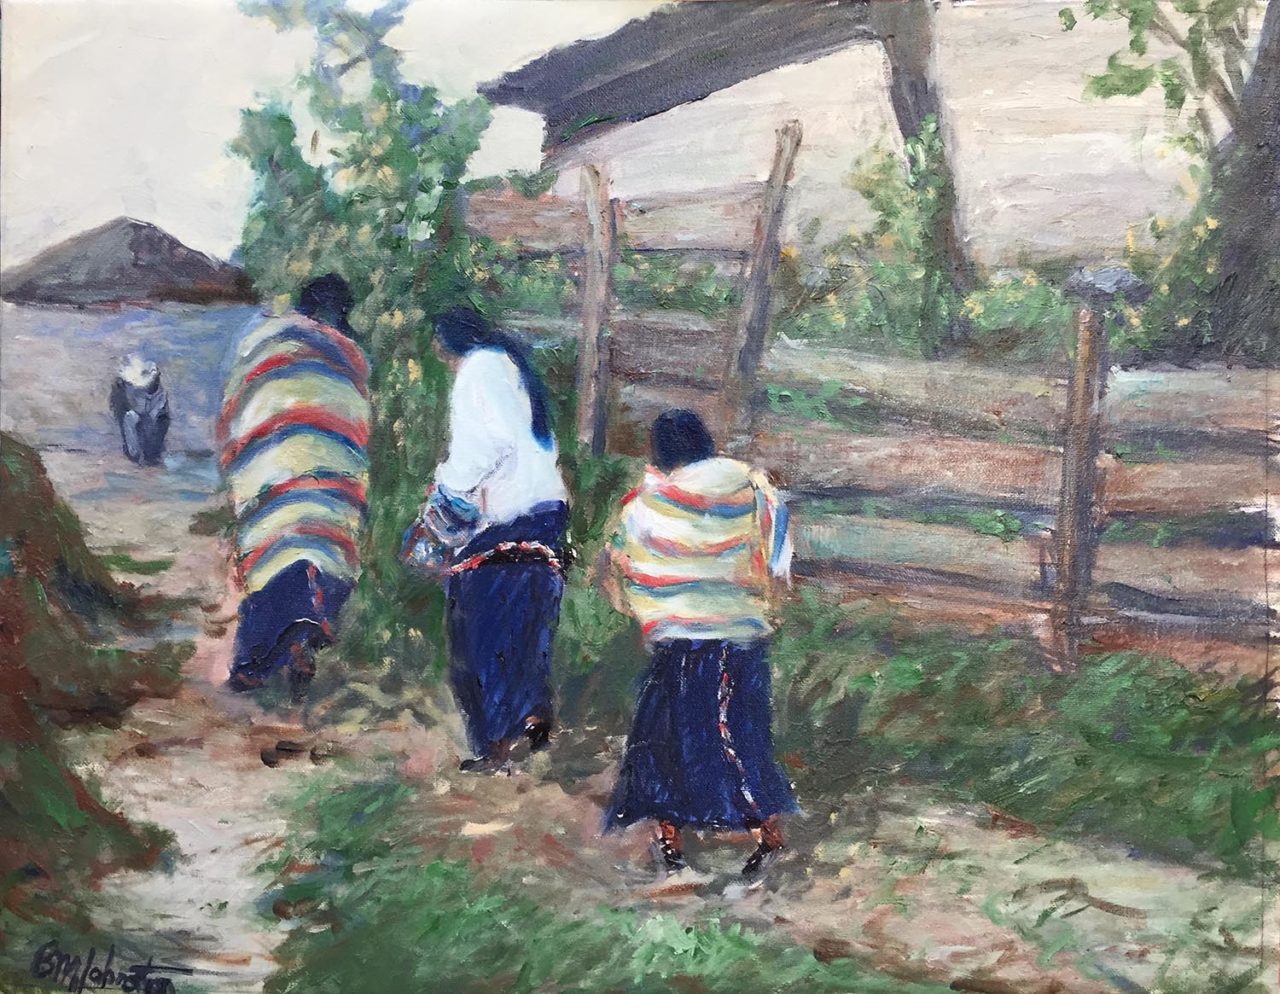 Into The Pueblo - Brian M. Johnston - North American Impressionist - 16" x 20" - oil on canvas - US$. 1350.